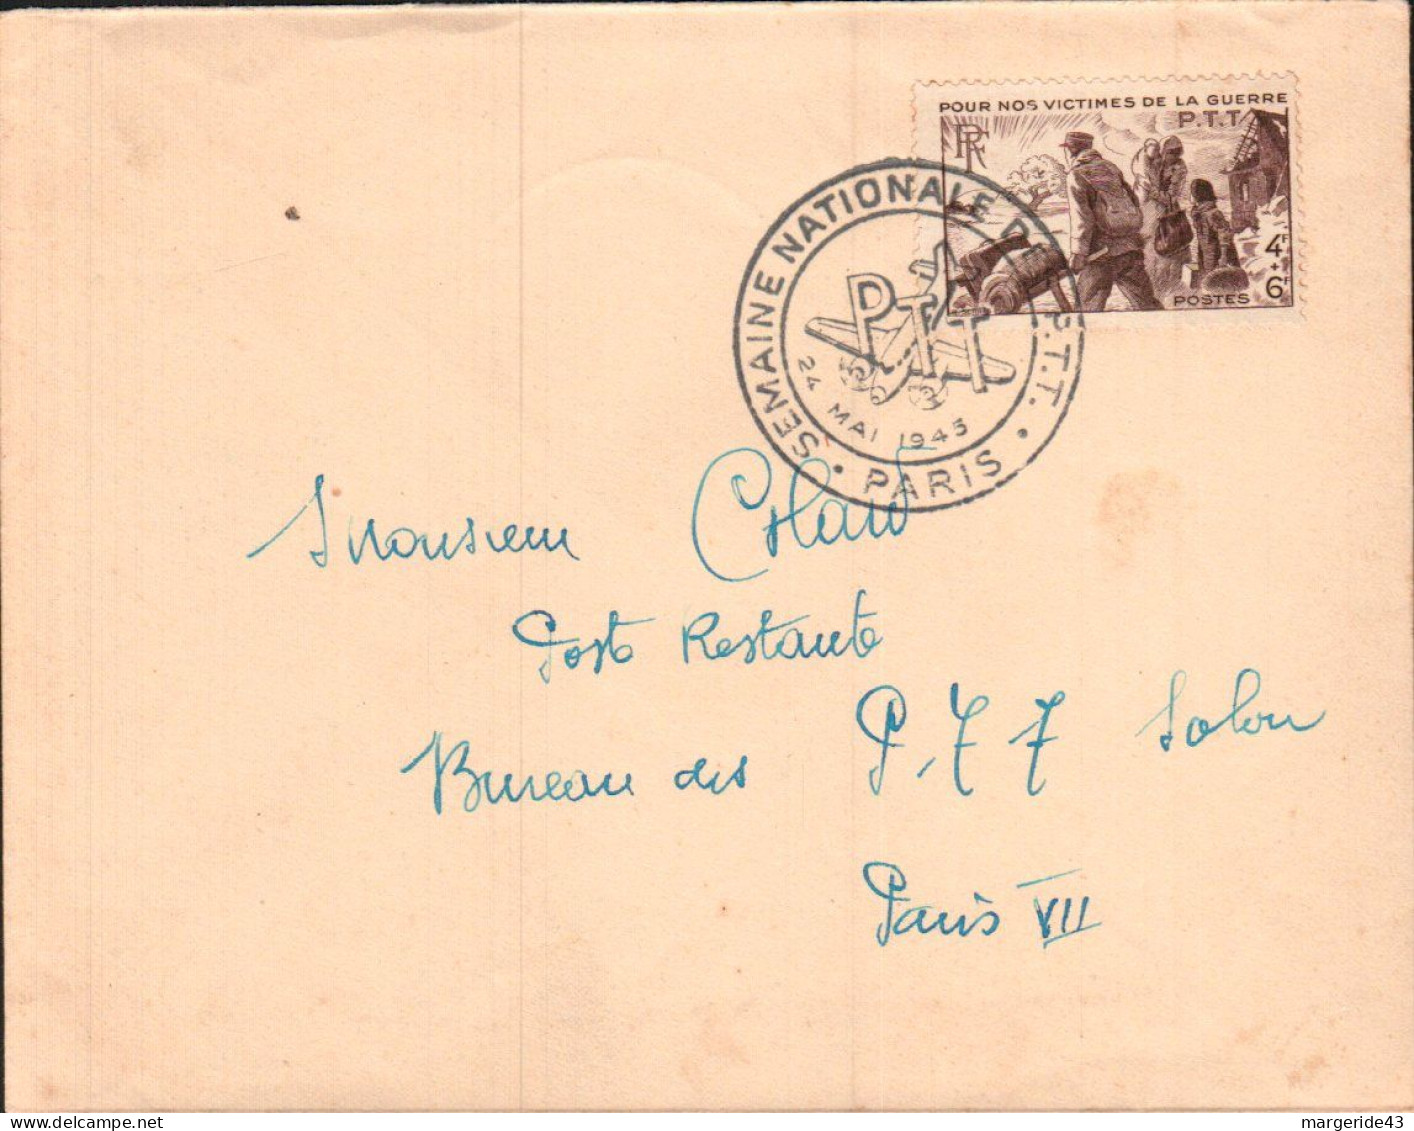 SEMAINE NATIONALE DES PTT PARIS 1945 - Commemorative Postmarks